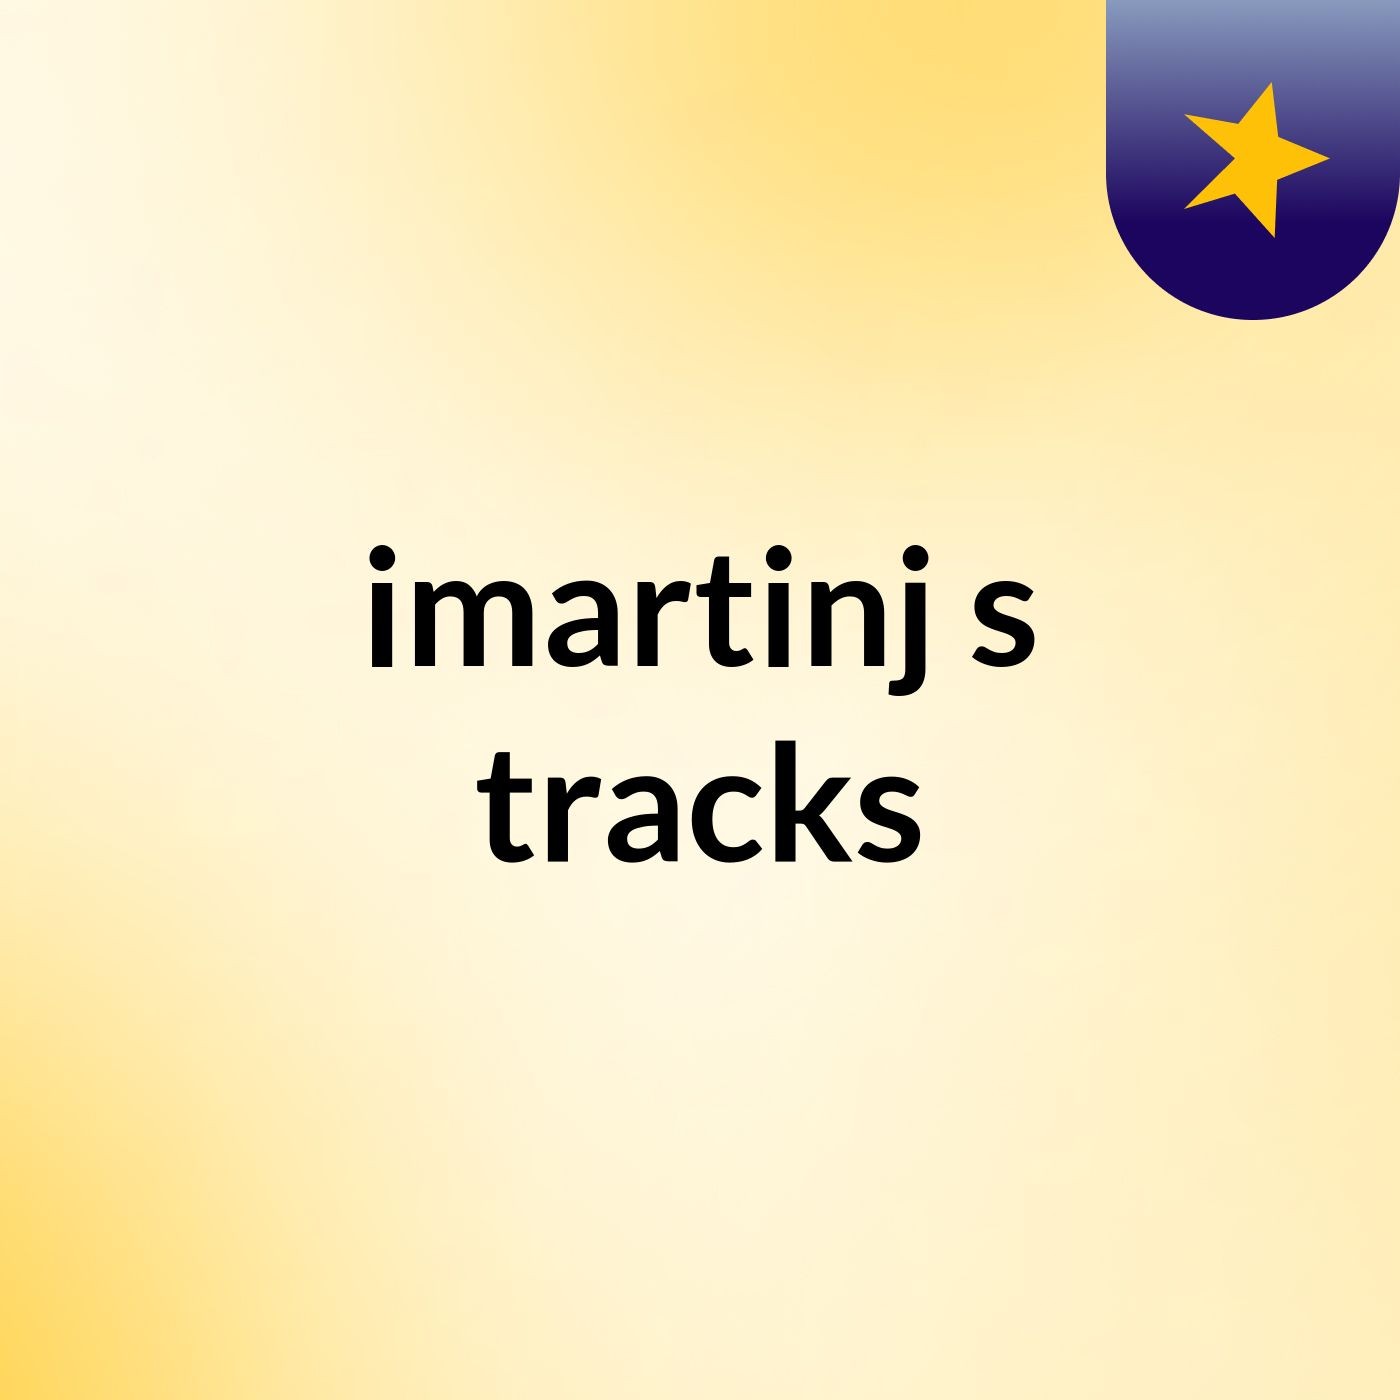 imartinj's tracks